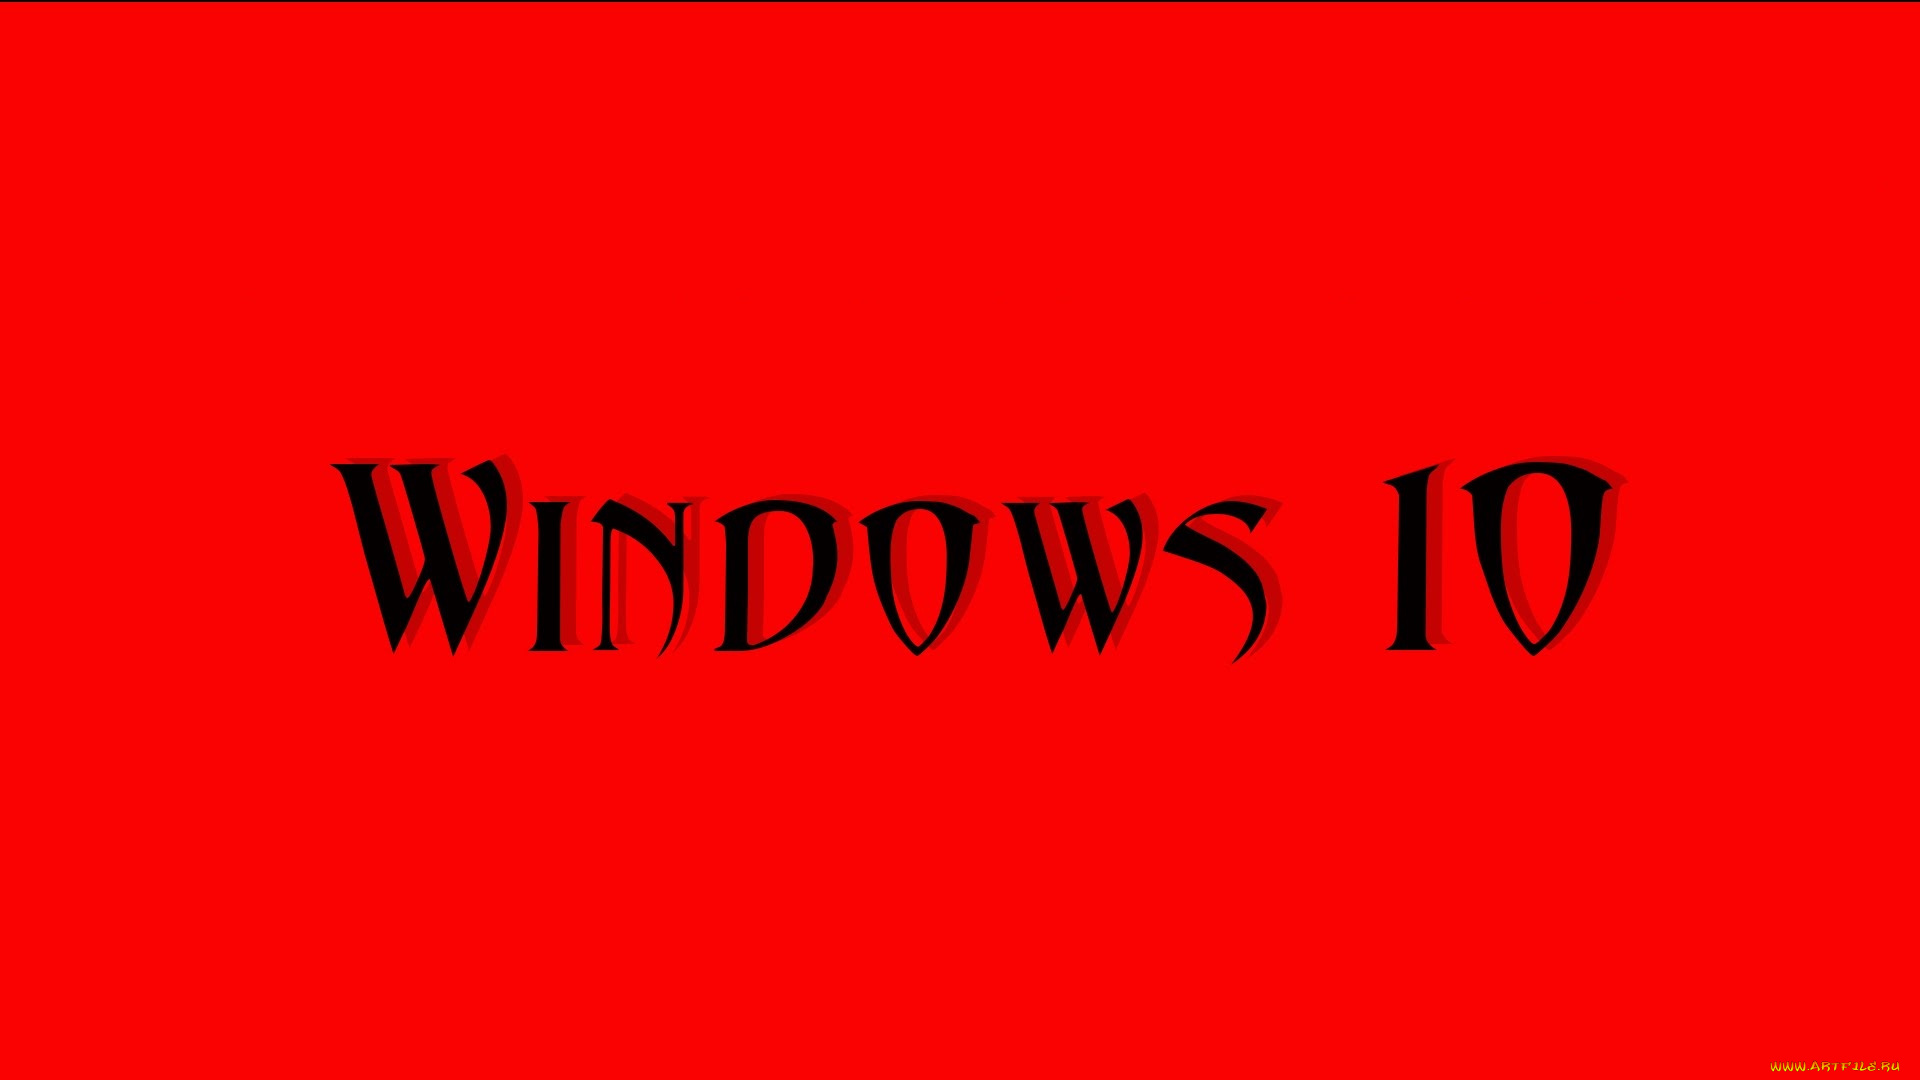 компьютеры, windows, , 10, фон, логотип